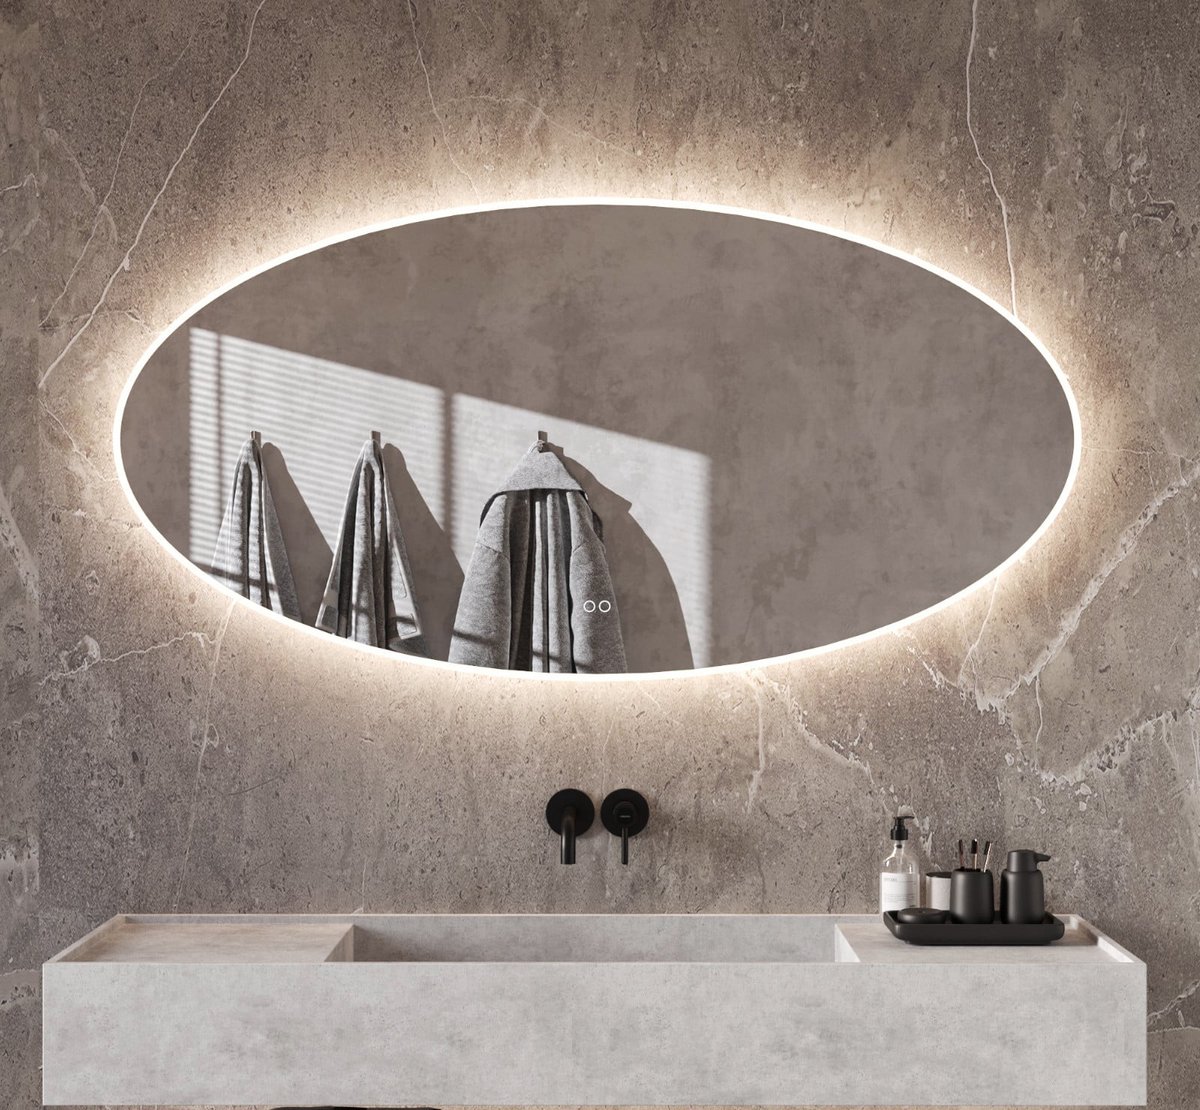 Ovale badkamerspiegel met directe en indirecte verlichting, verwarming, instelbare lichtkleur en dimfunctie 160×70 cm